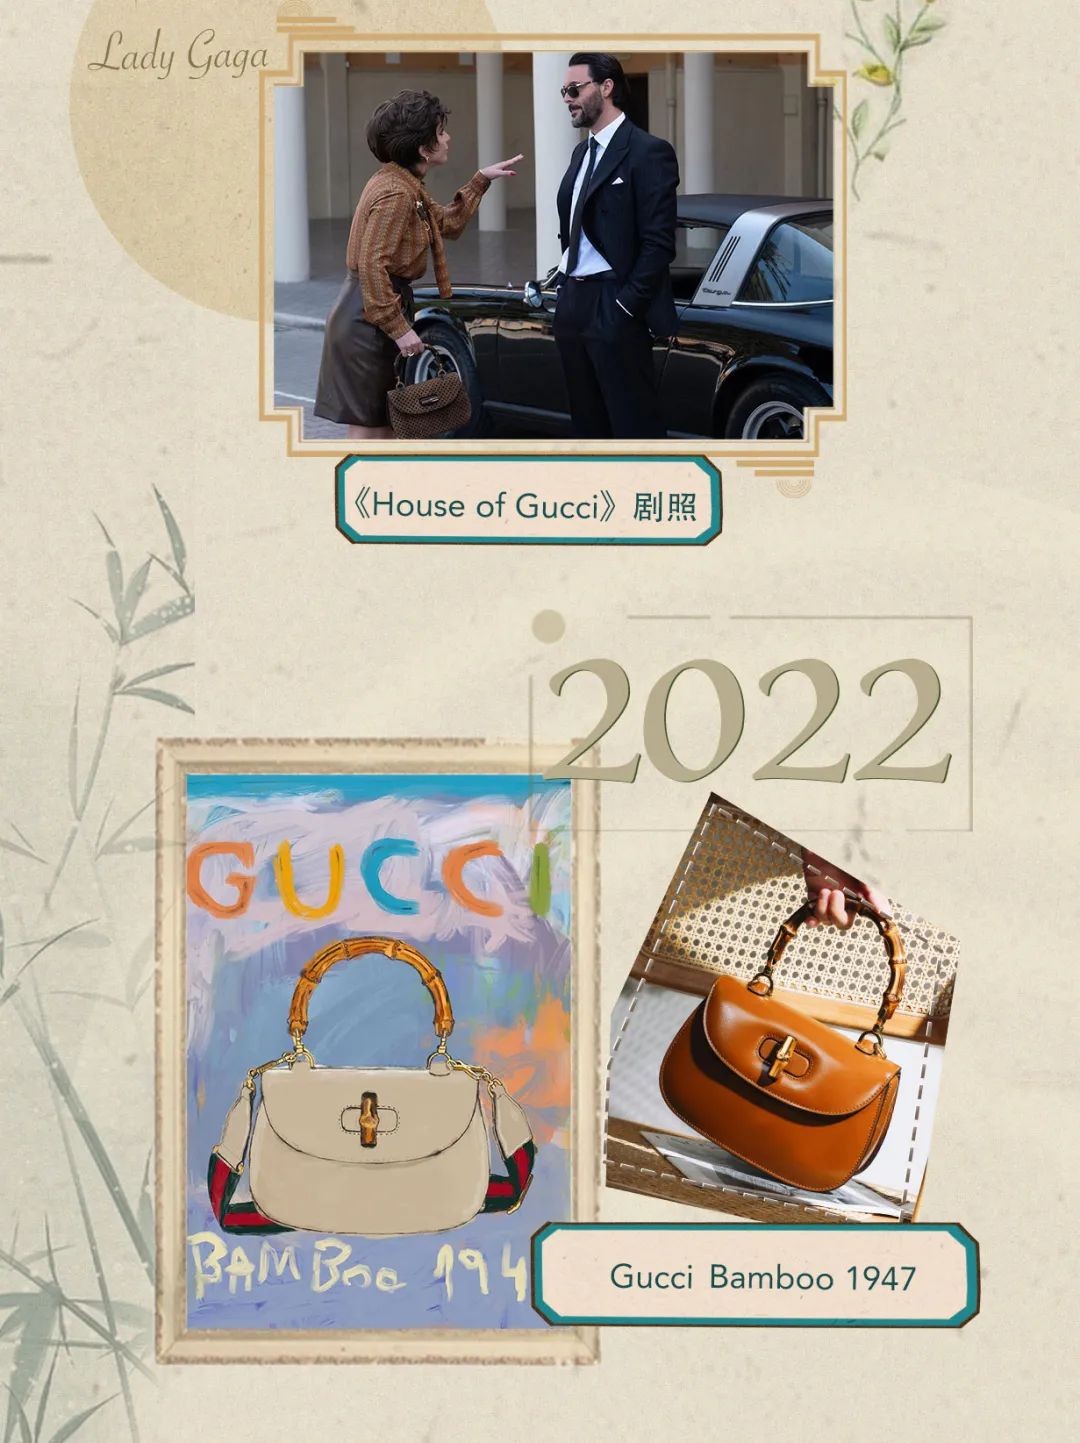 Gucci sili ona ta'uta'ua fa'atusa taga fa'ailoga - Gucci Bamboo 1947 (2022 lomiga fou)-Tagata Lelei Fake Louis Vuitton Bag Faleoloa i luga ole laiga, Fa'atusa taga fa'ailoga taga ru